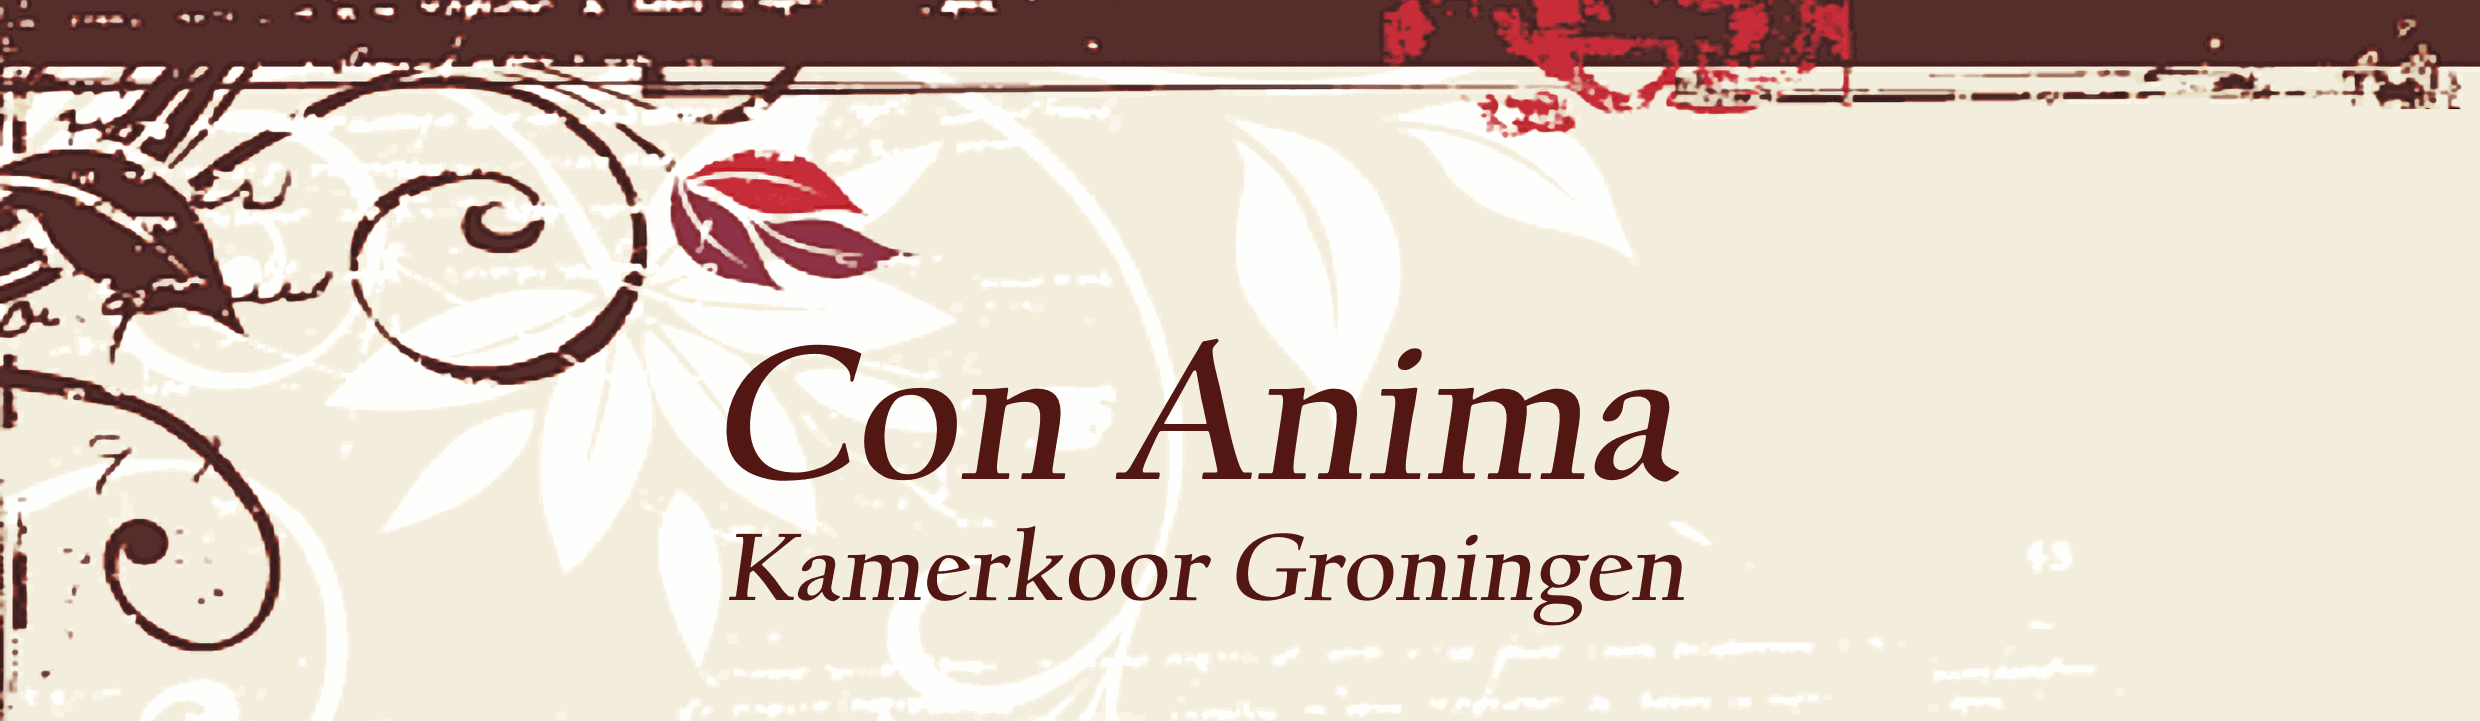 Kamerkoor Con Anima Groningen